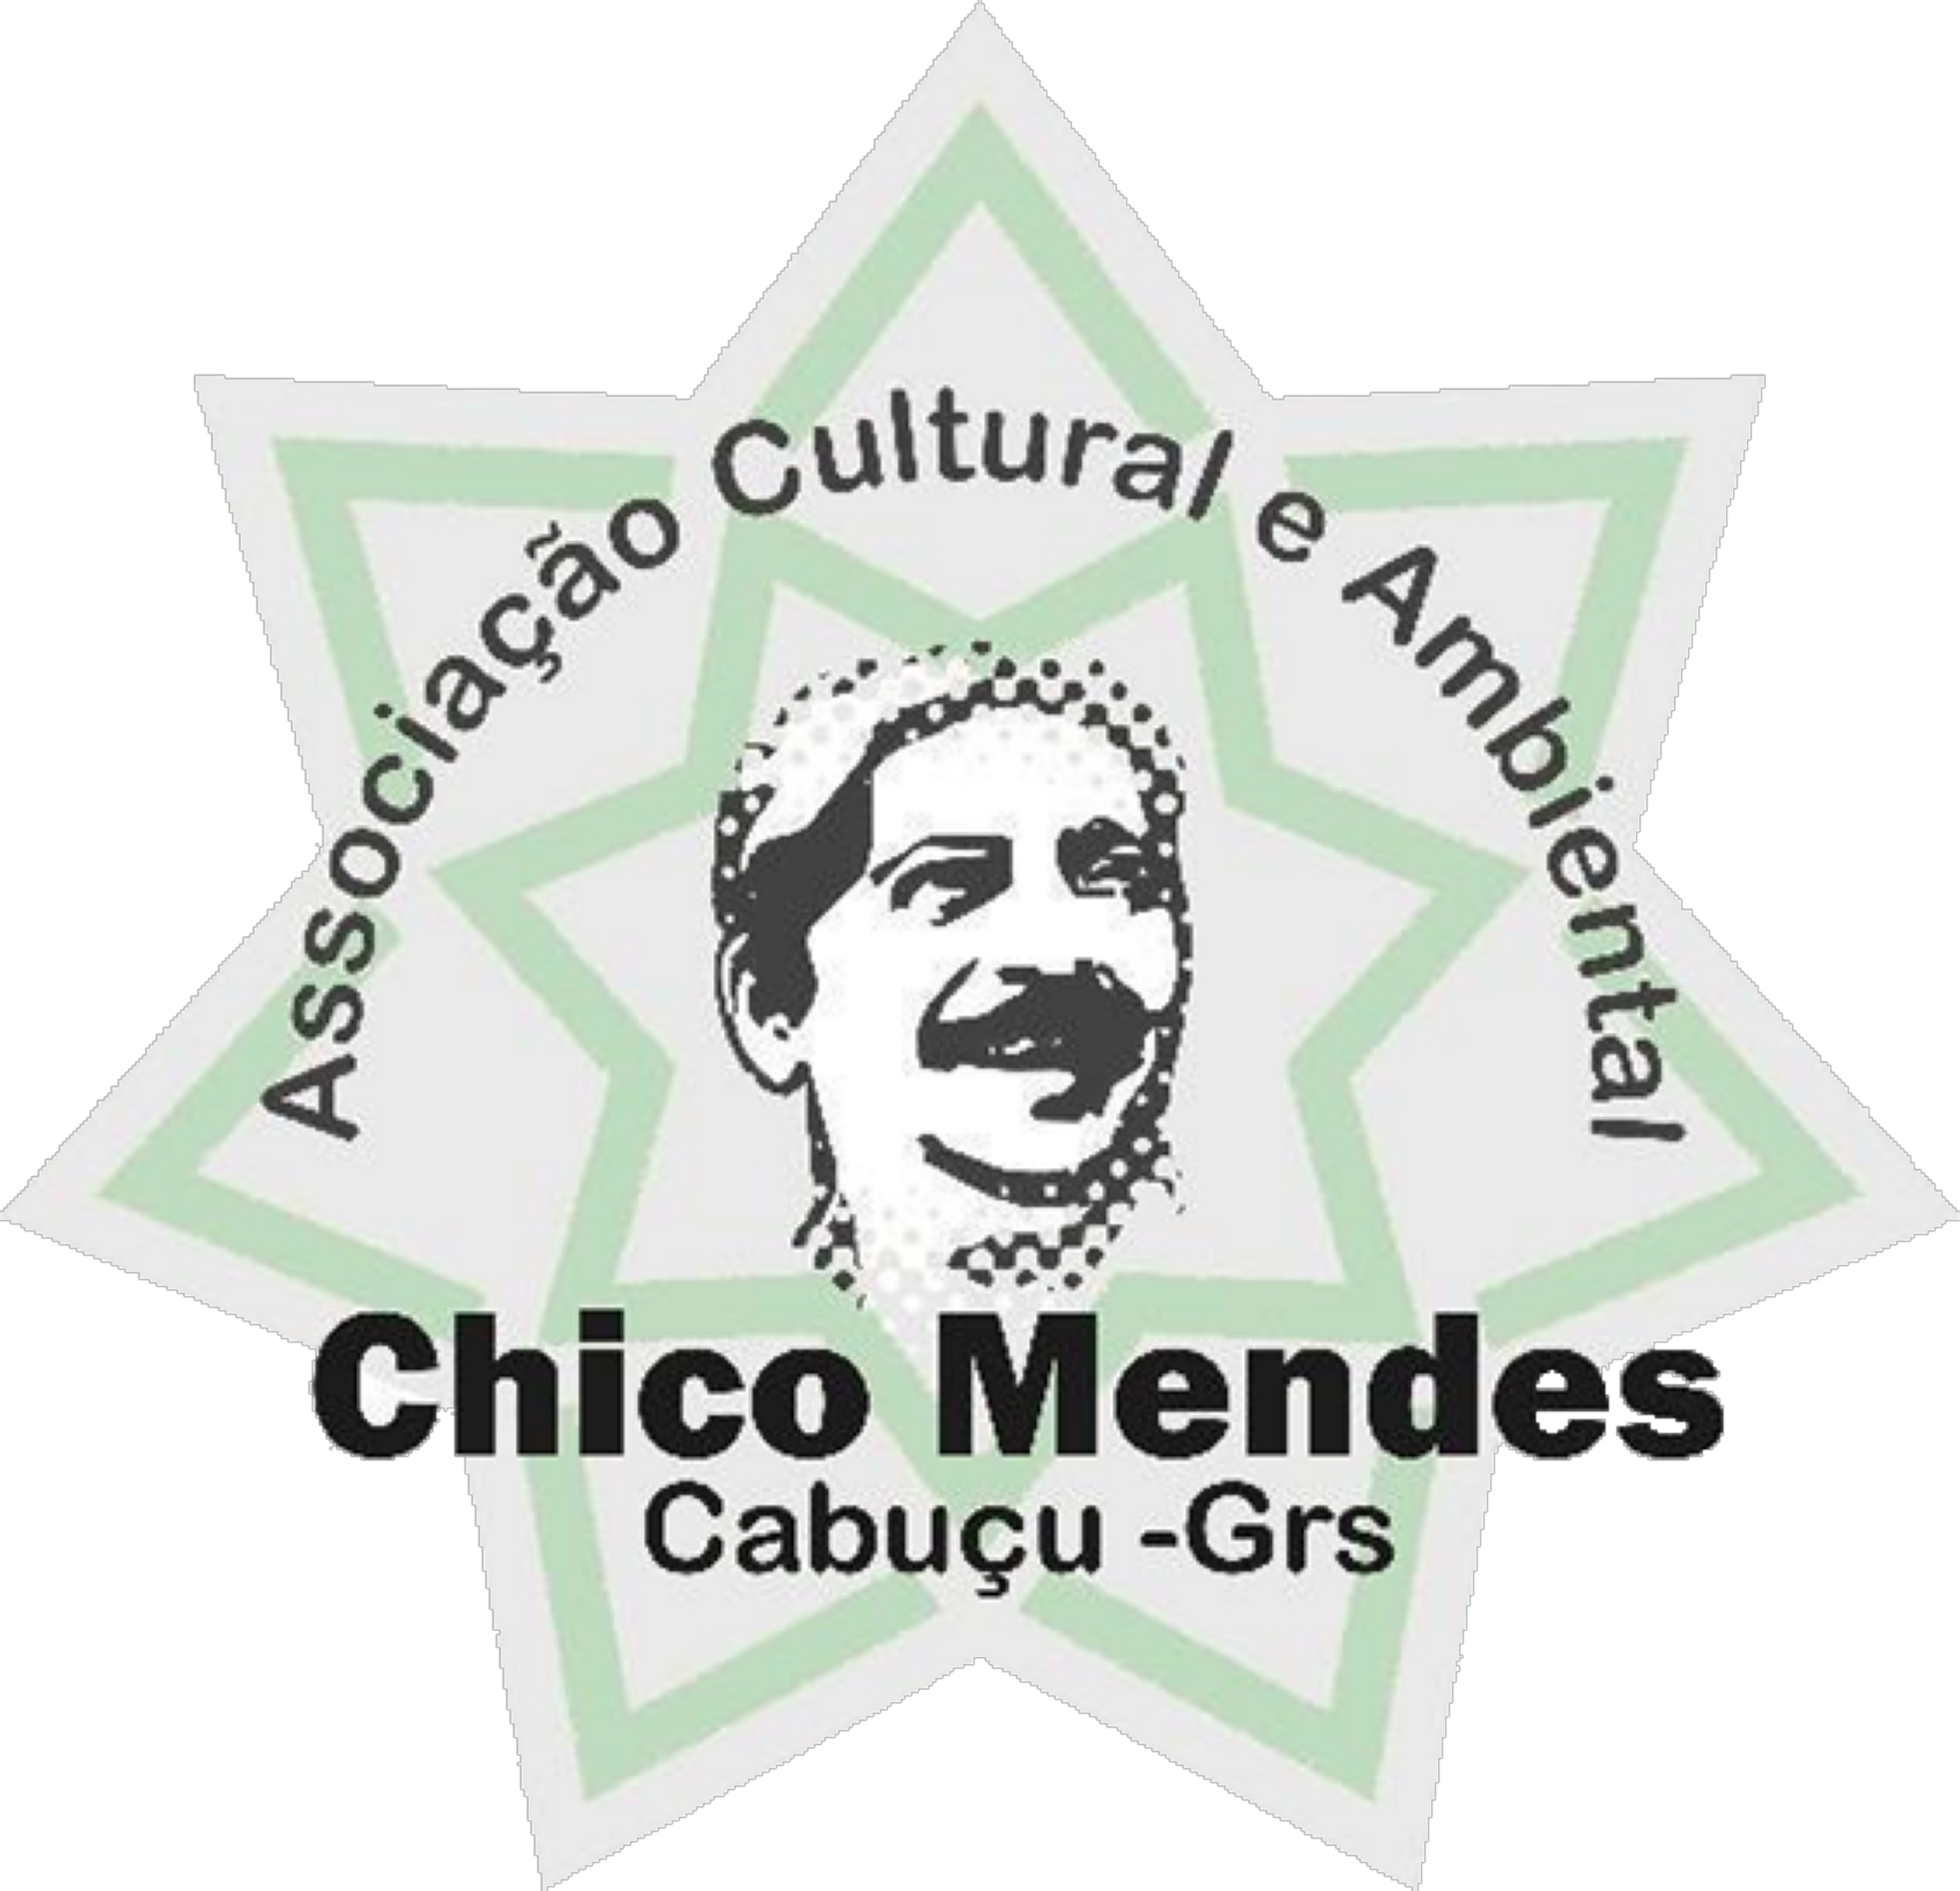 Com vocês, a ONG Chico Mendes, nobre parceira do Eniac Social